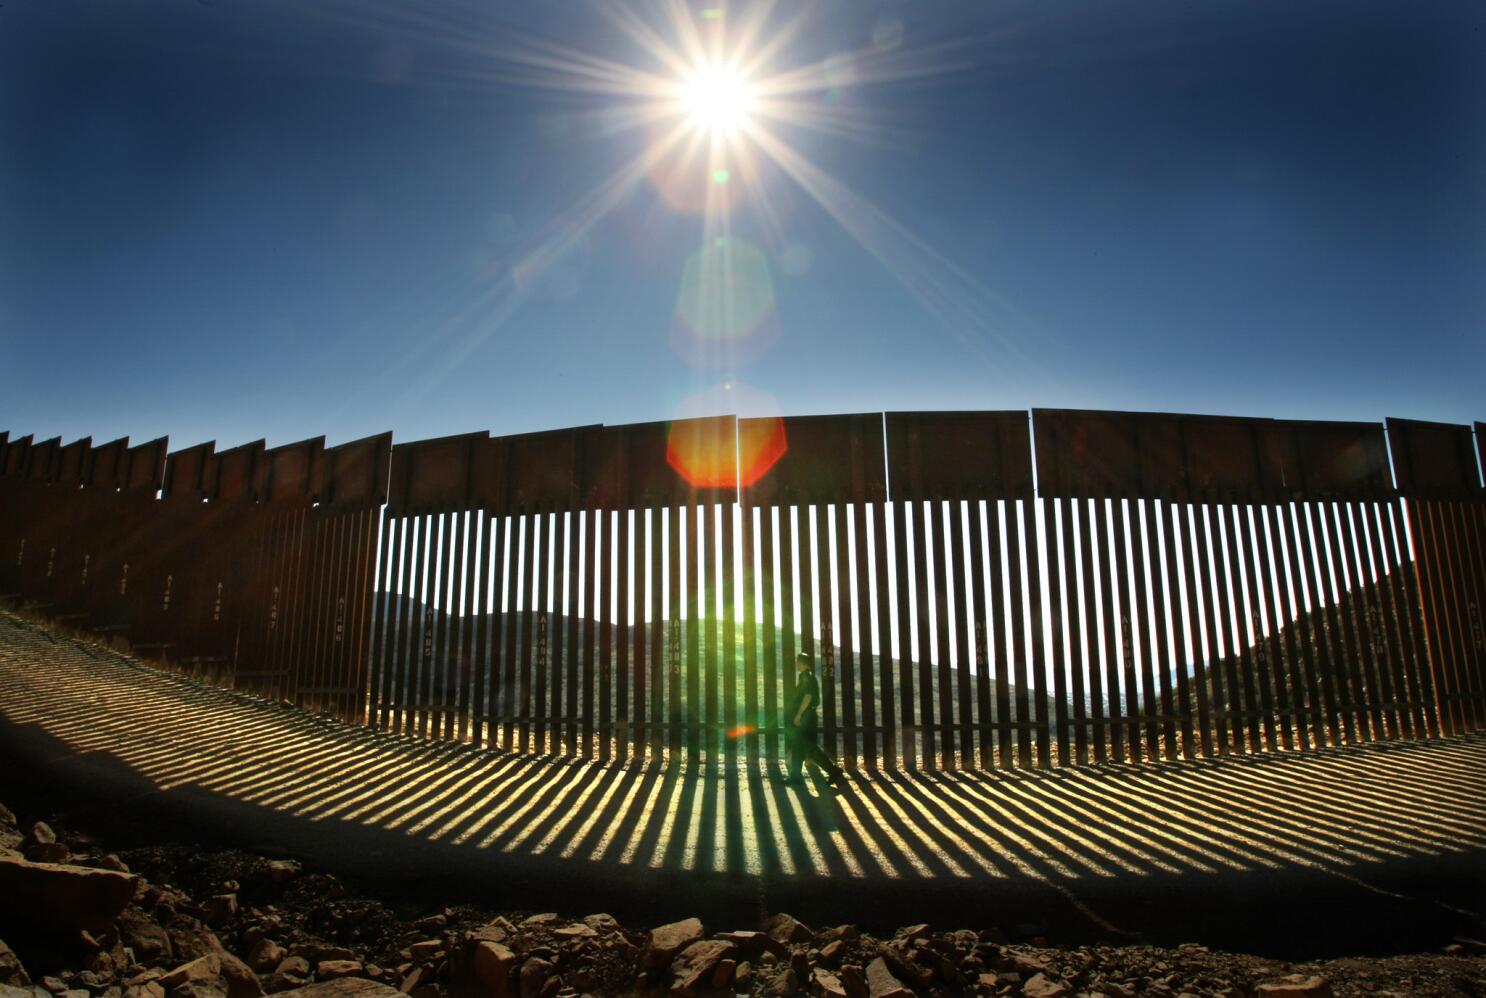 Mexico–United States border - Wikipedia